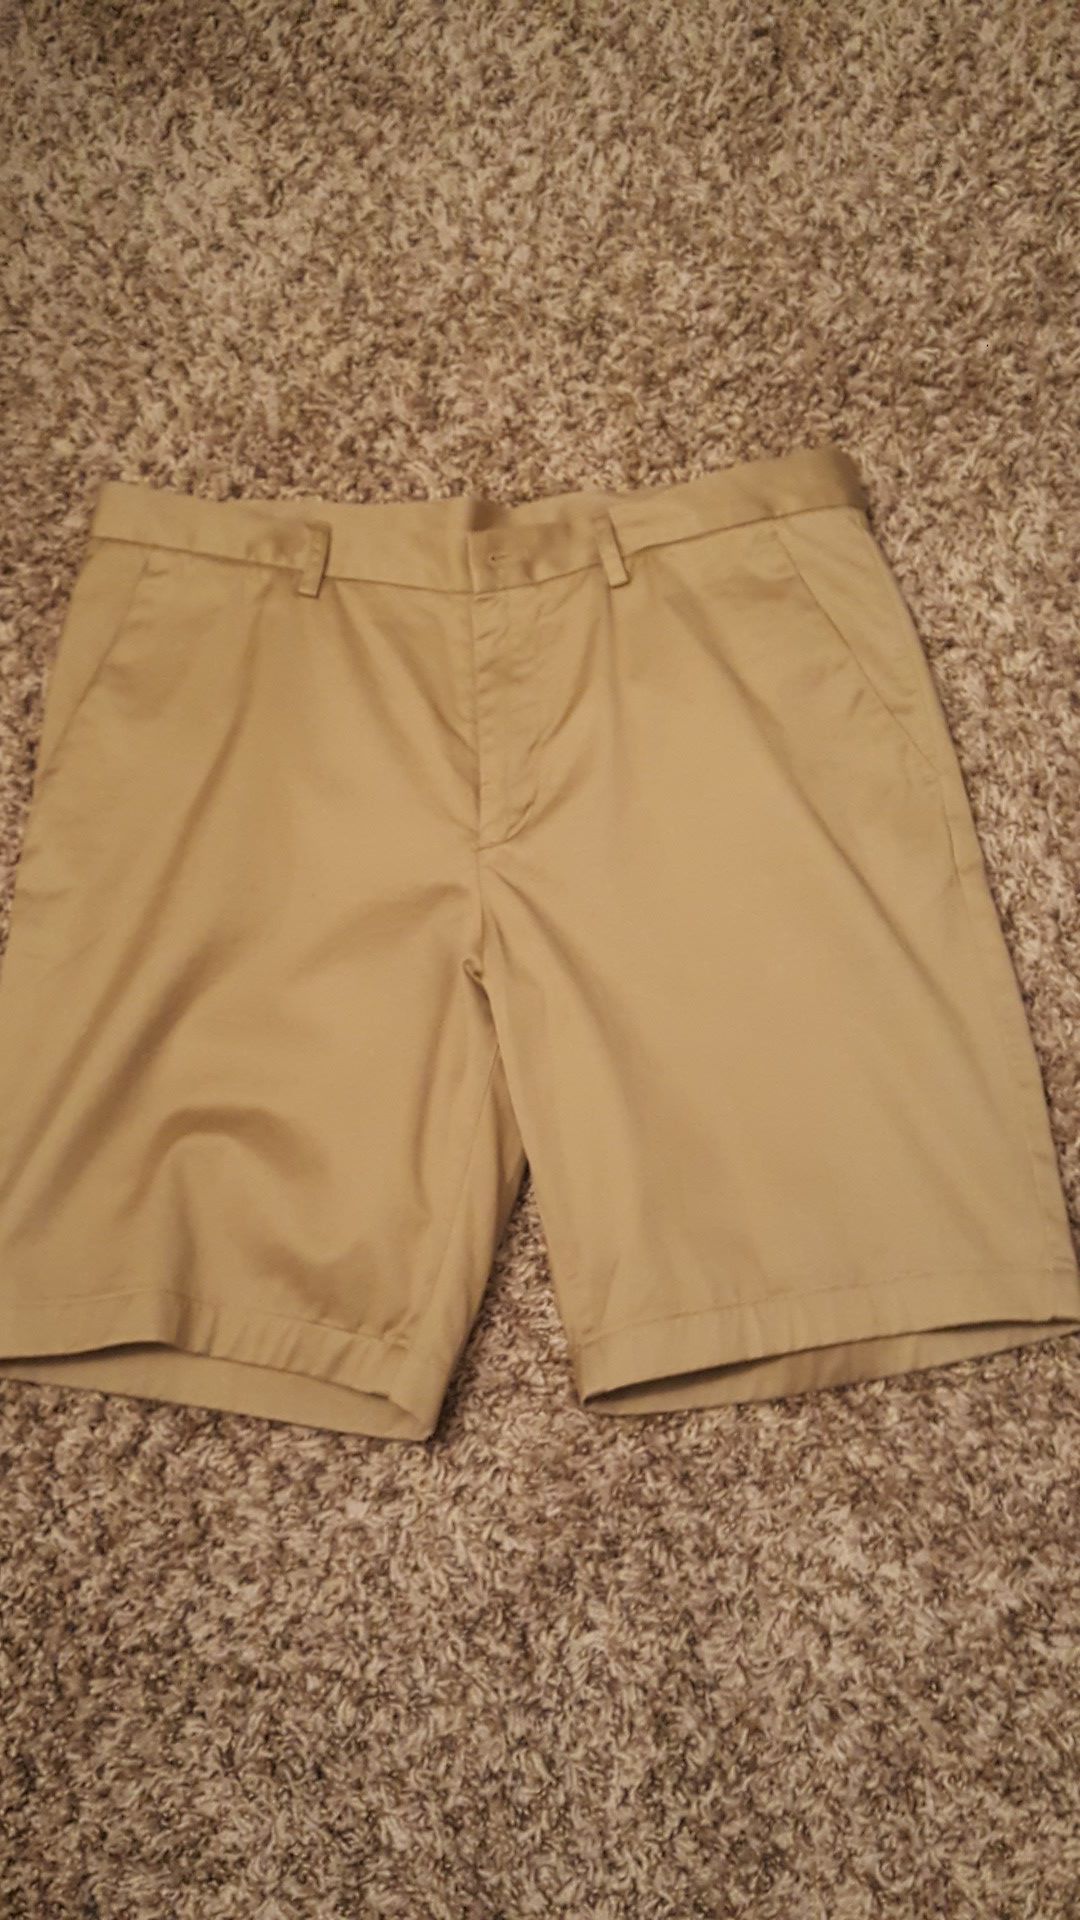 Michael Kors khaki shorts - 33